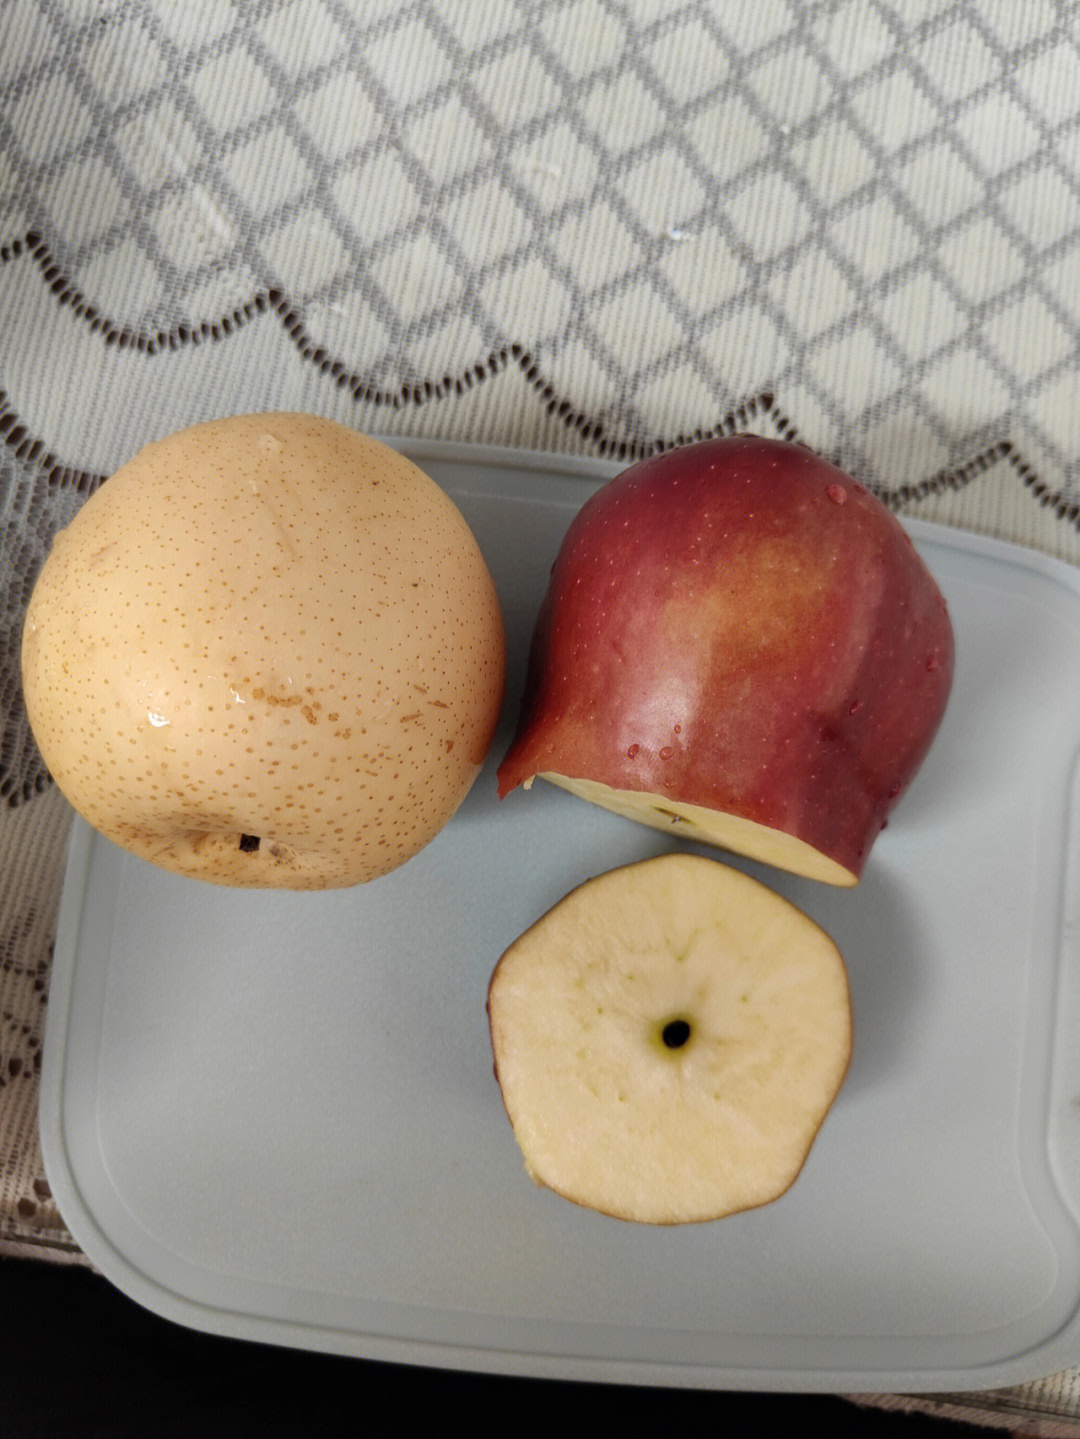 7月龄水果之苹果梨